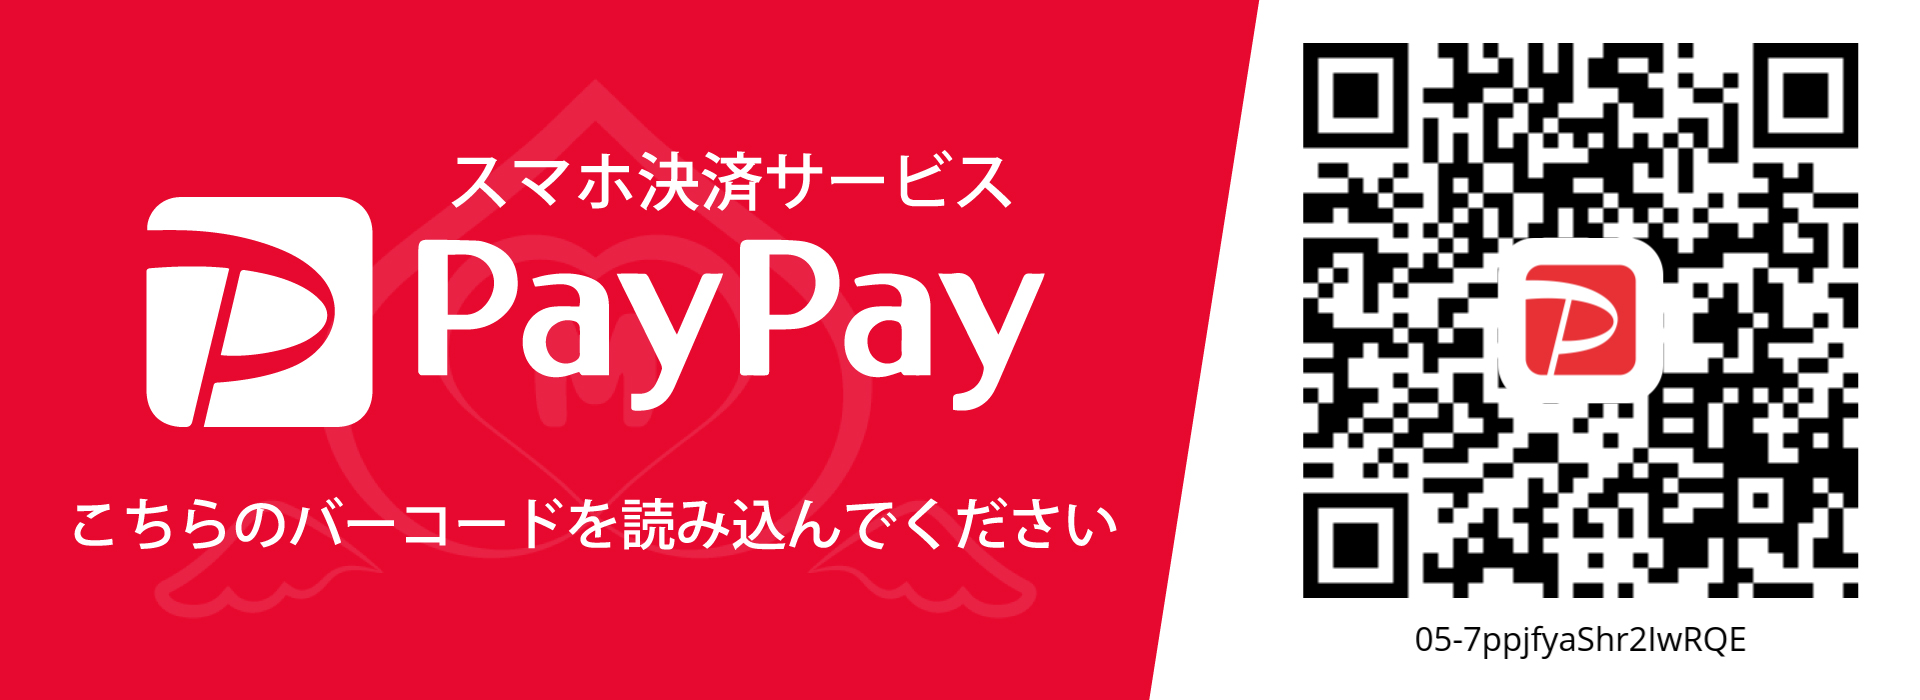 MOMOTEN京都 -ももてん-のPayPay決済画像